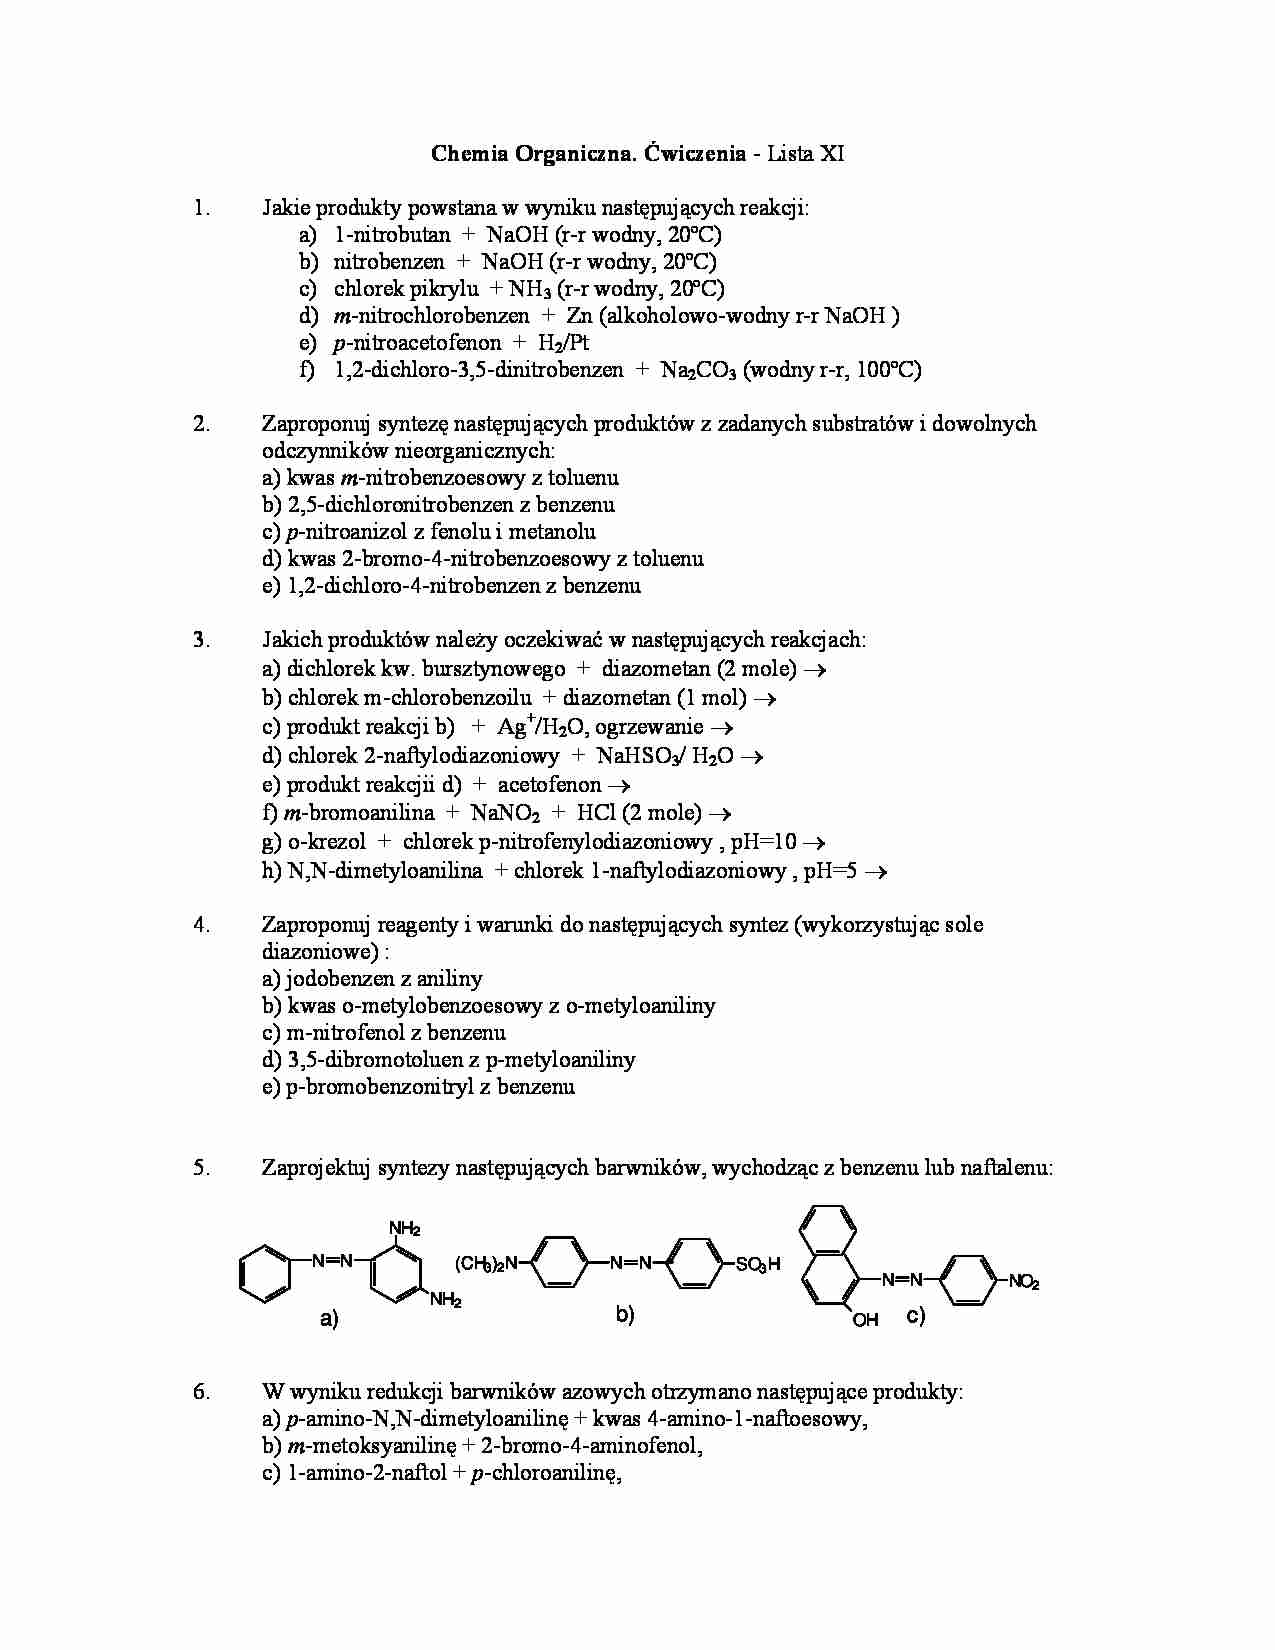 Chemia organiczna - ćwiczenia, lista XI - strona 1